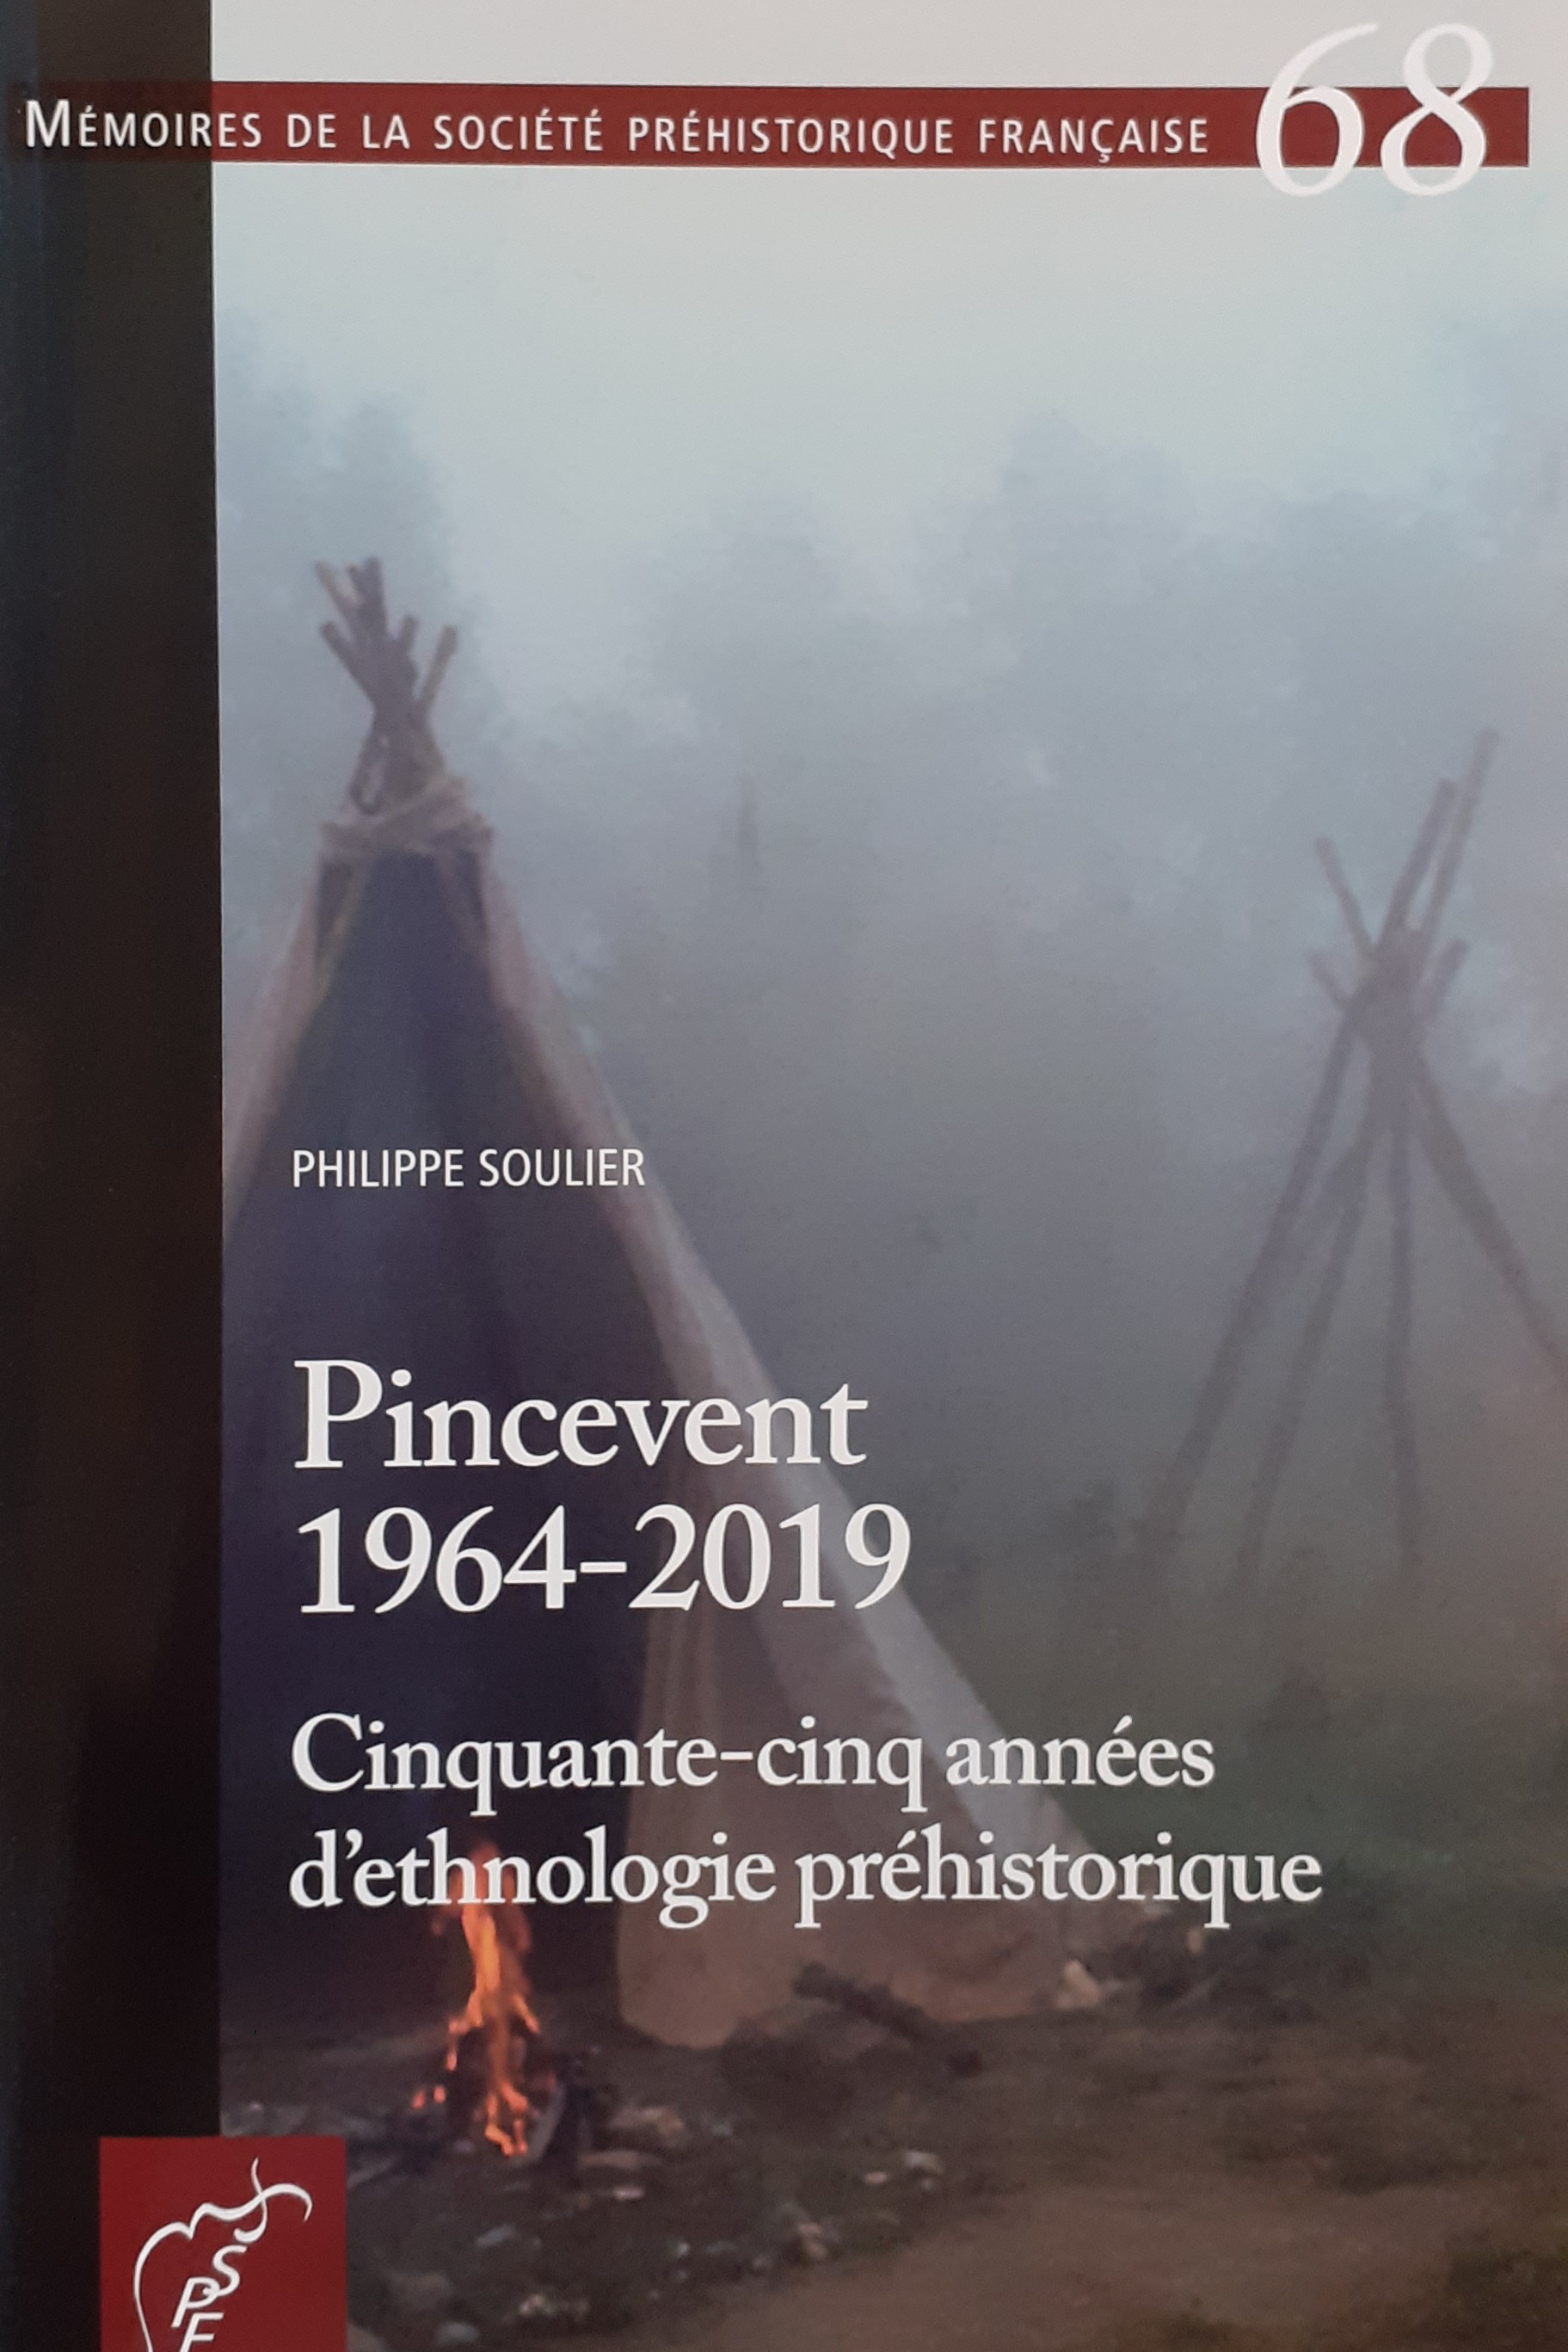 Pincevent 1964-2019. Cinquante-cinq années d'ethnologie préhistorique, (Mémoire SPF 68), 2021, 168 p.